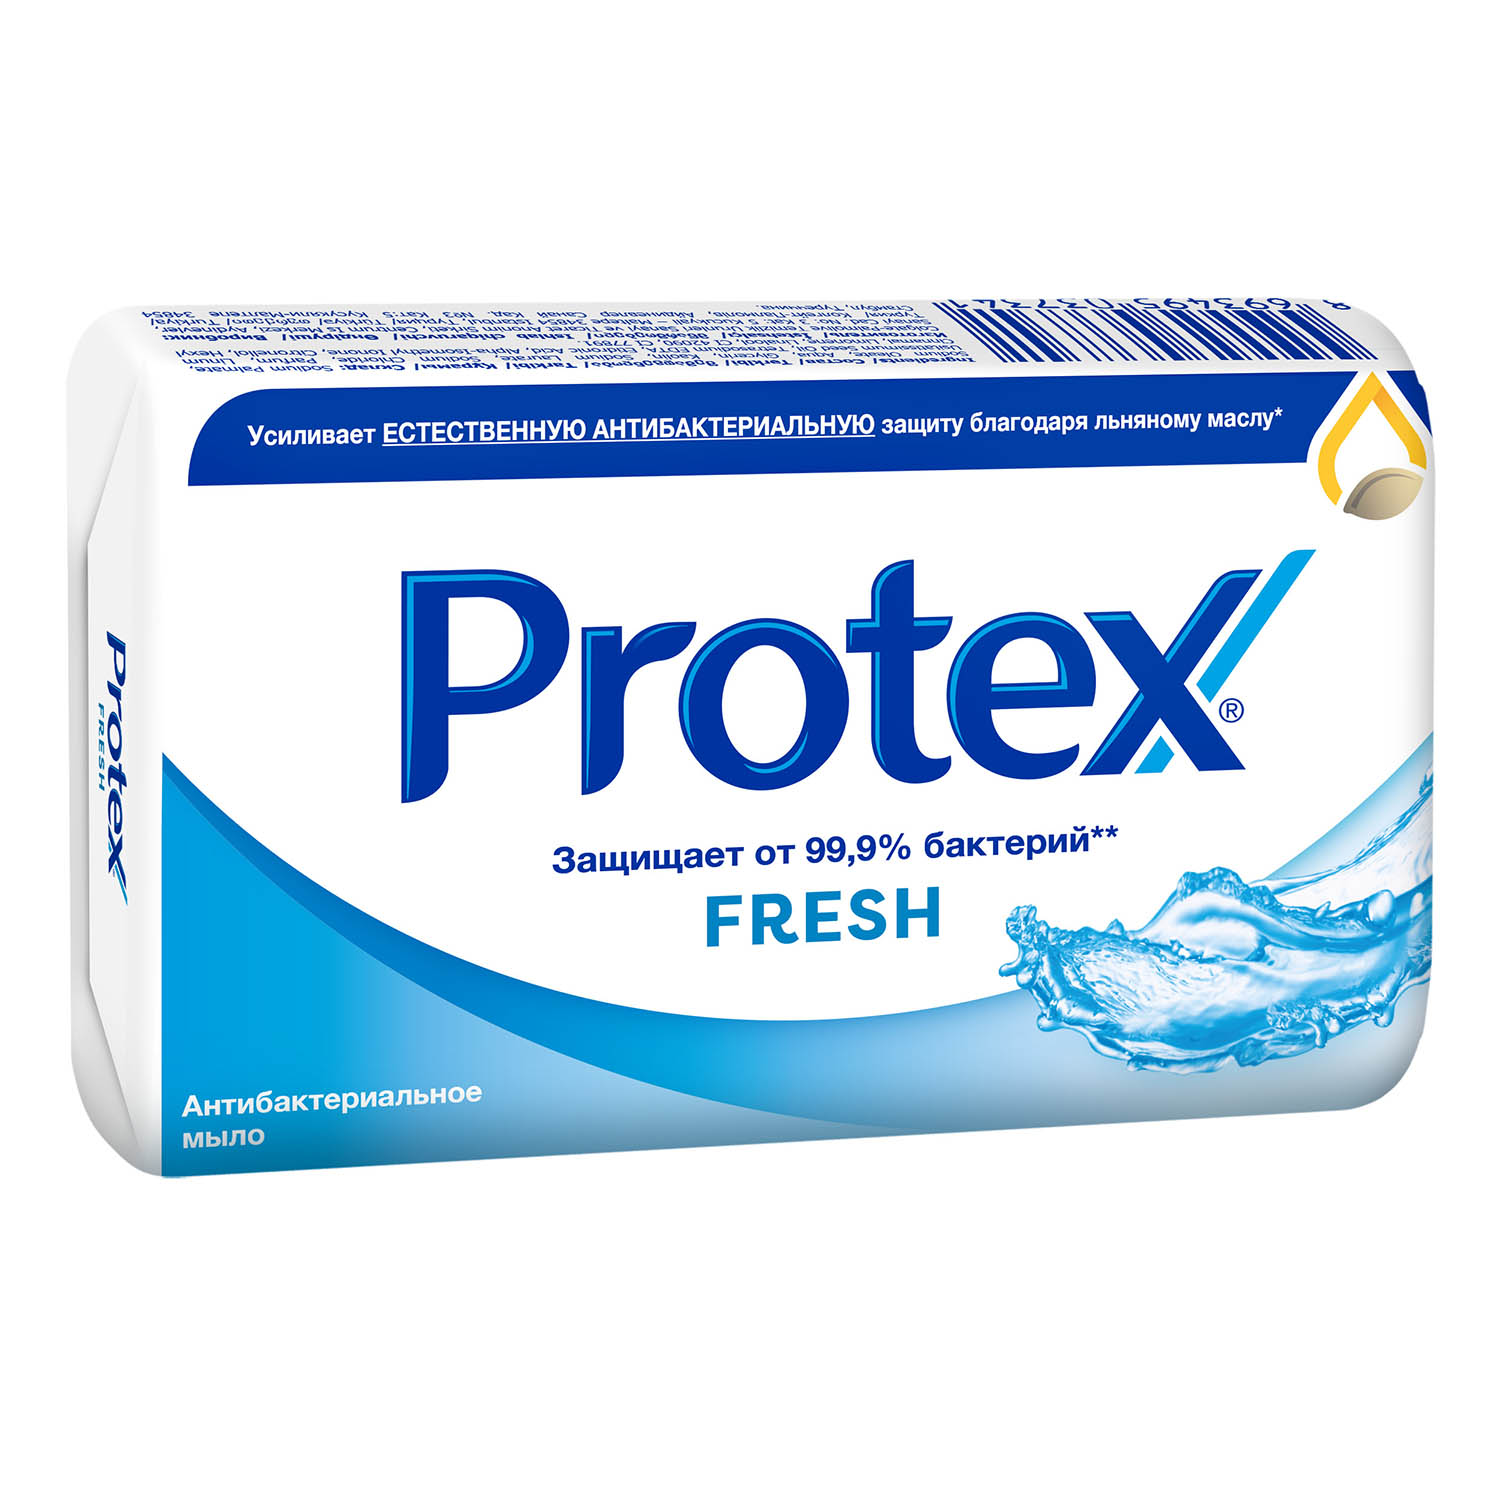 Мыло туалетное Protex Fresh антибактериальное, 90 г мыло protex ultra антибактериальное 90 г